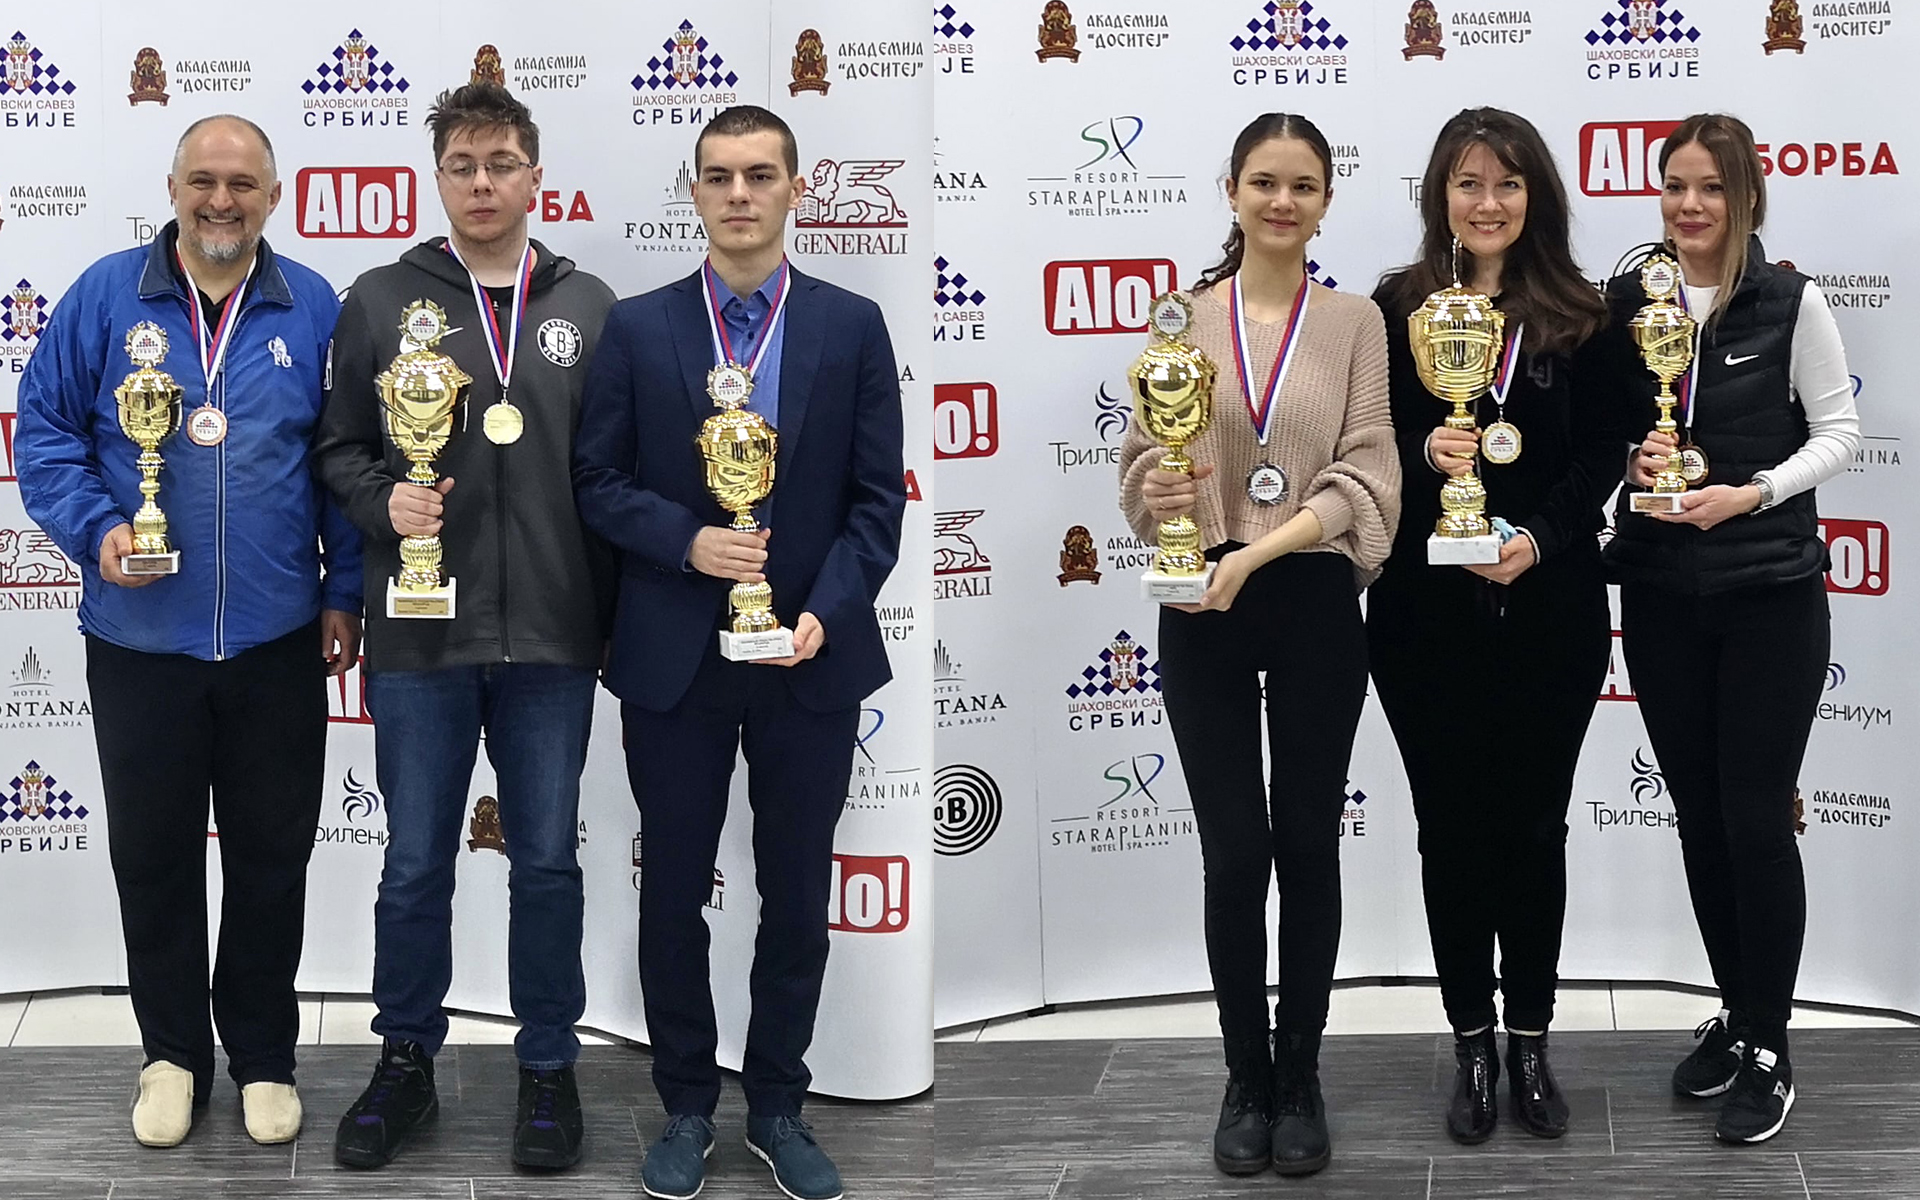 Završeno polufinale Prvenstva Srbije u šahu koje je igrano u Paraćinu